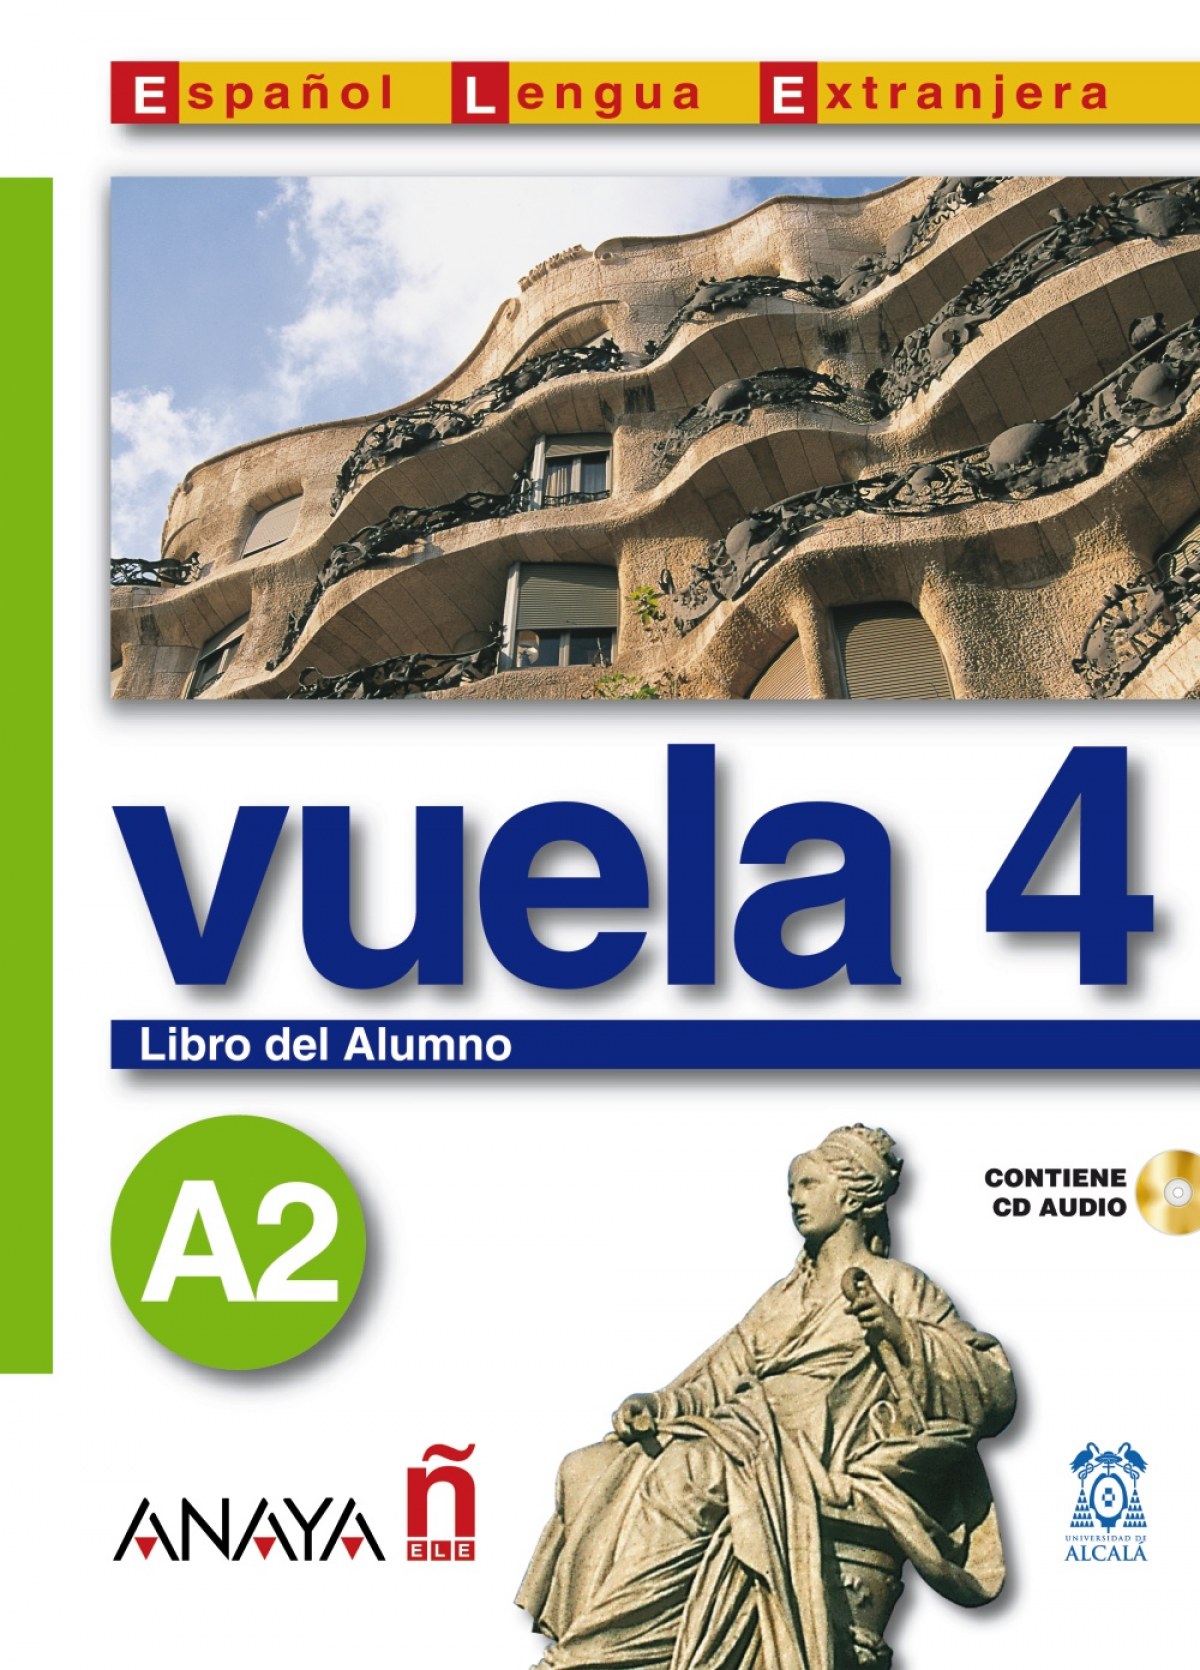 Vuela 4 Libro del Alumno A2 - Álvarez Martínez, M.ª Ángeles/Blanco Canales, Ana/Torrens Álvarez, M.ª Jesús/Alarcón Pérez, Clara